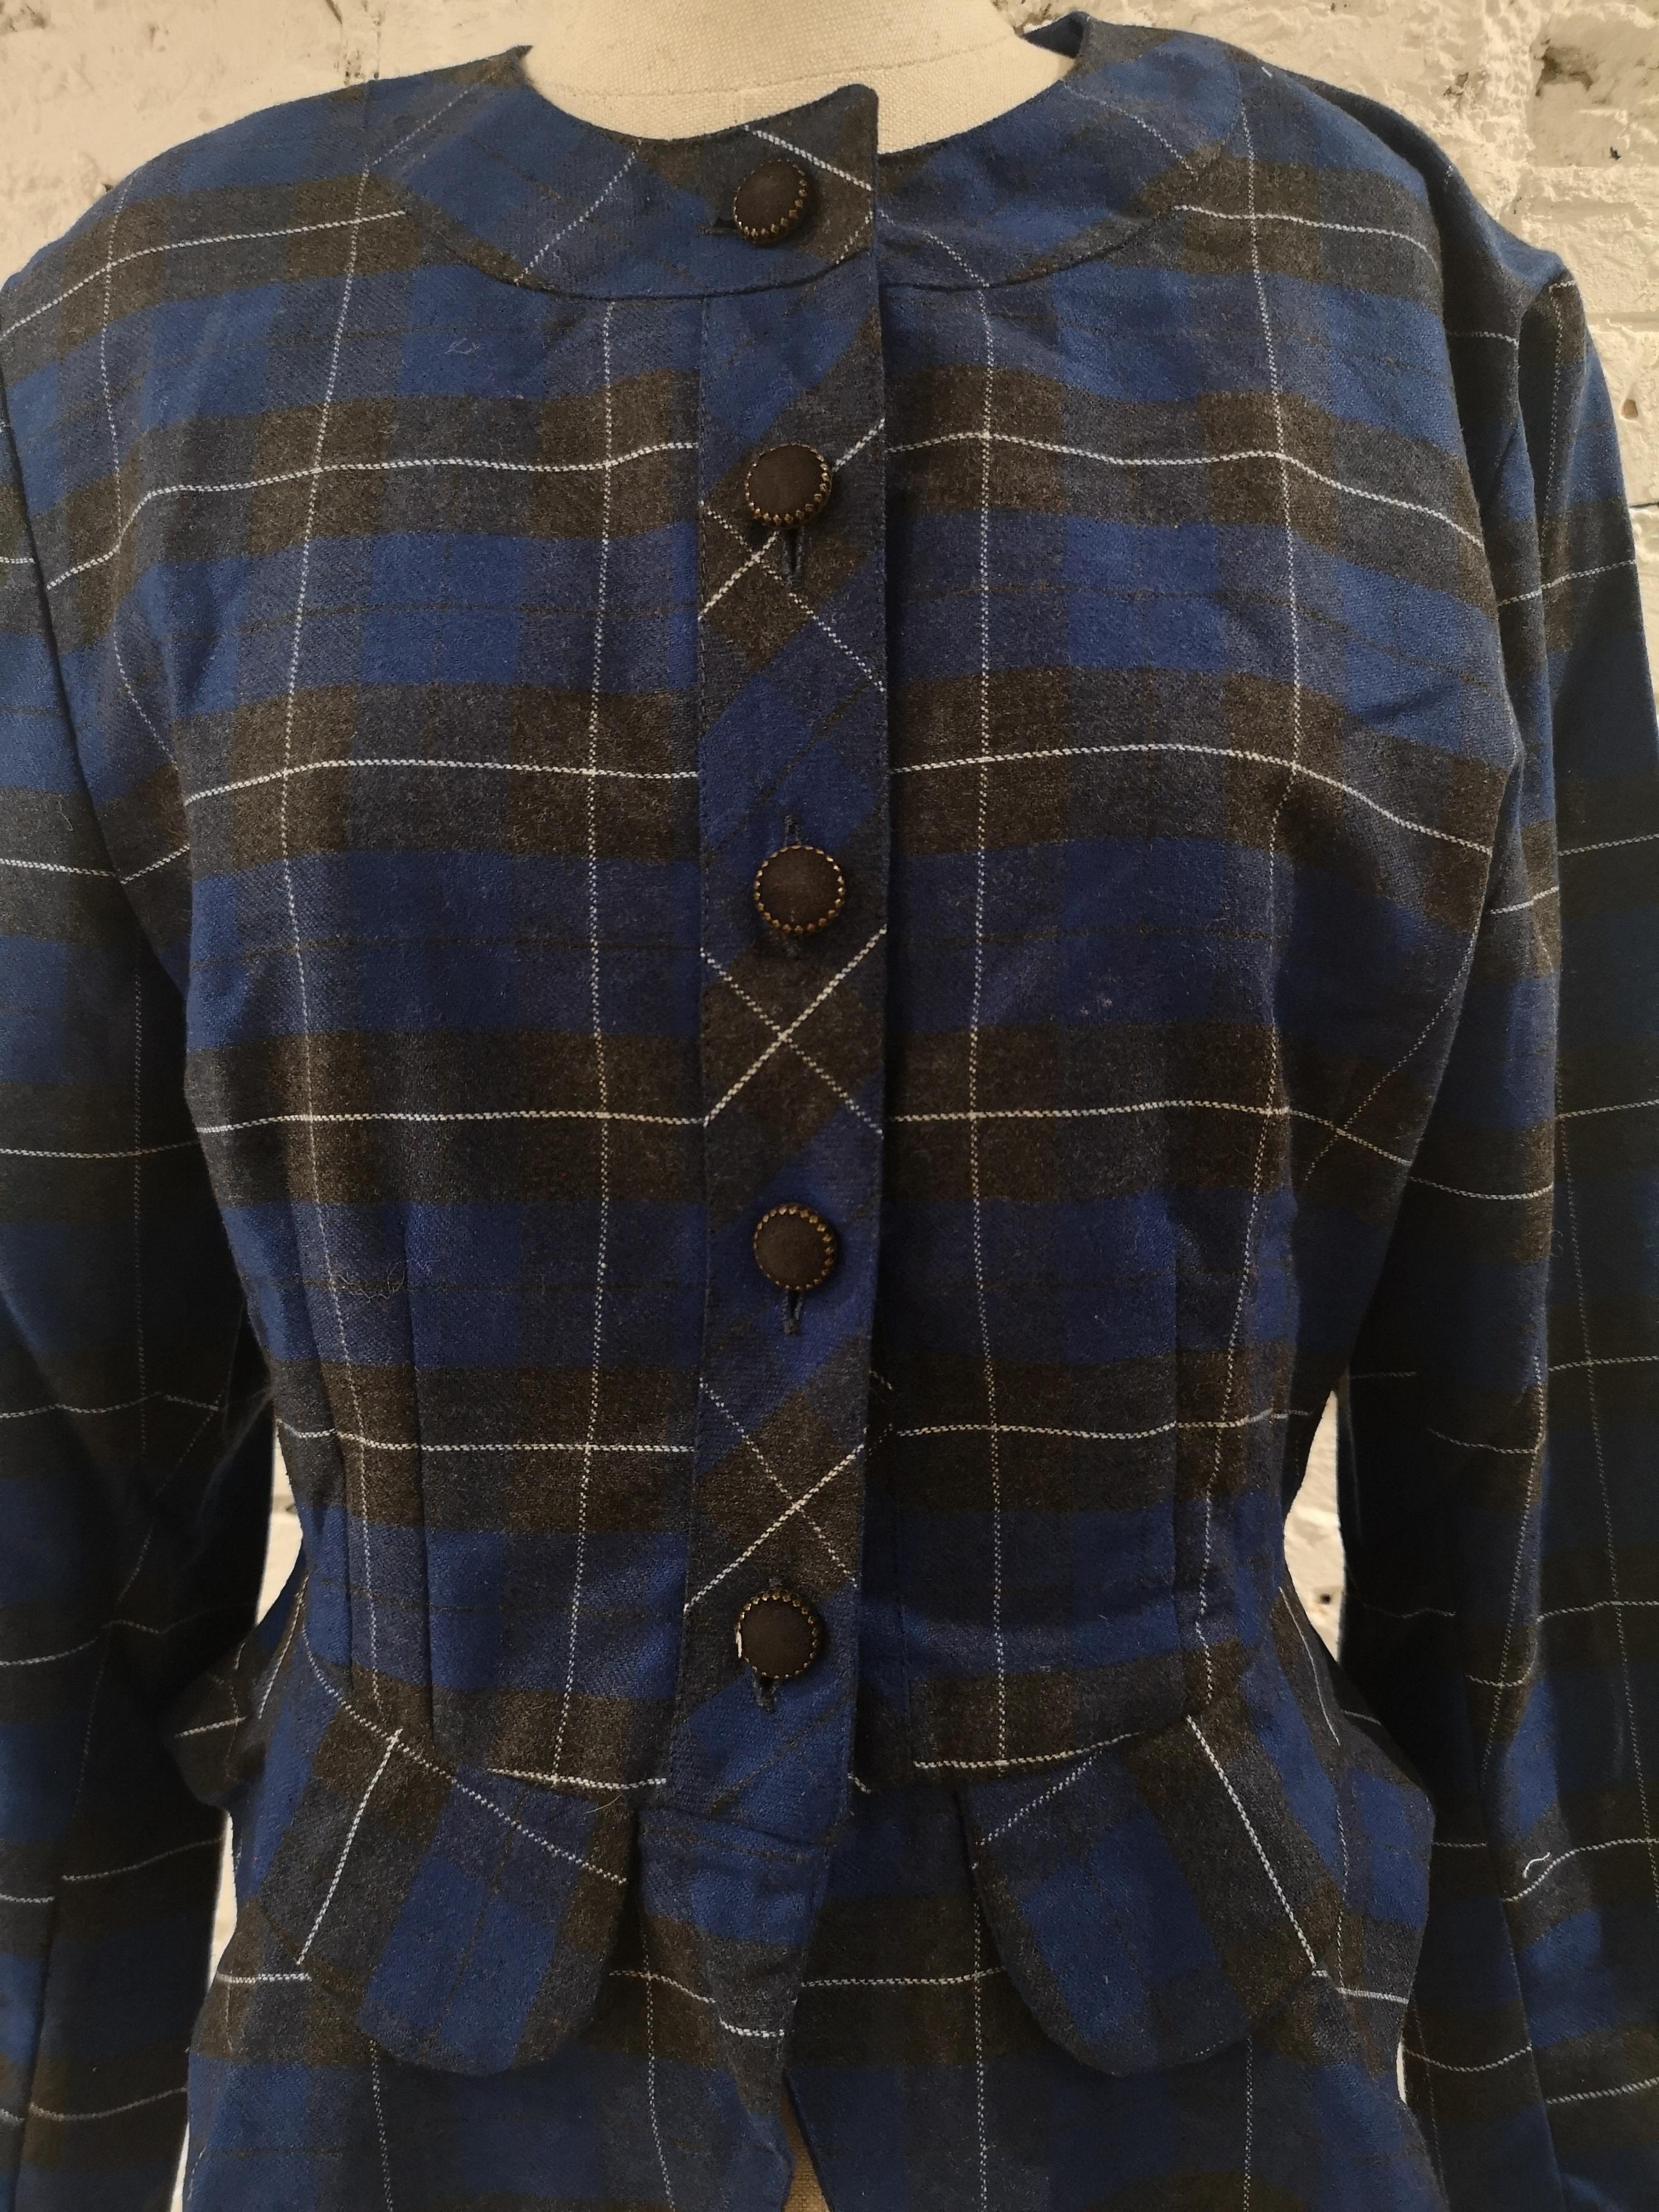 Vintage blue black jacket
size S 
total lenght 58 cm
shoulder to hem 59 cm